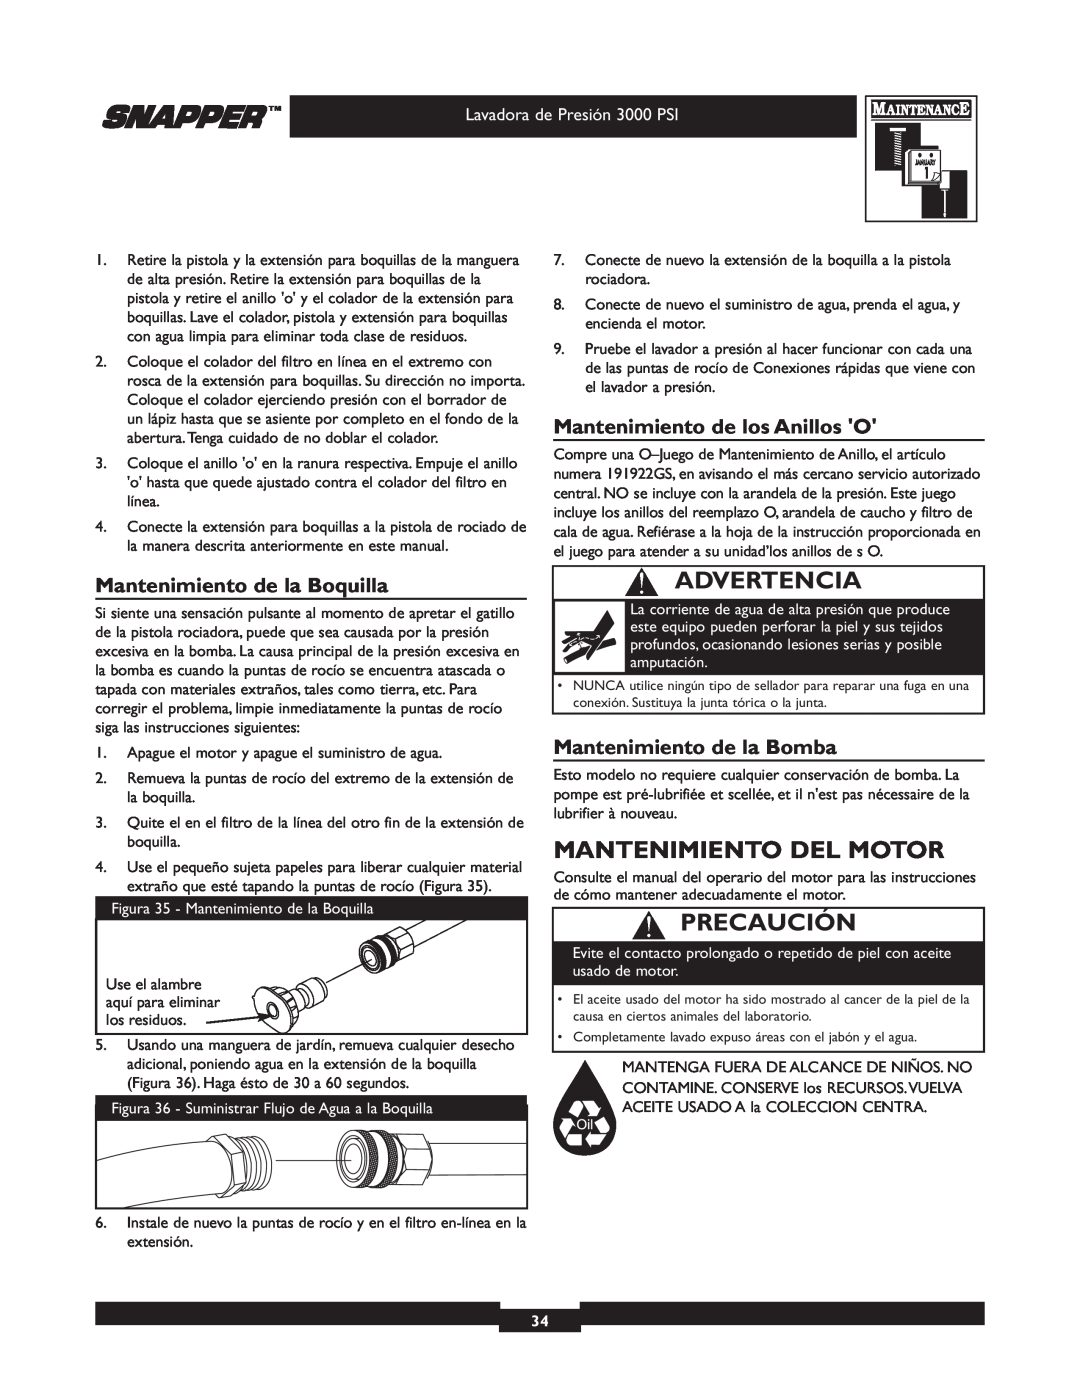 Snapper 020231-2 manual Mantenimiento Del Motor, Mantenimiento de la Boquilla, Mantenimiento de los Anillos O, Advertencia 